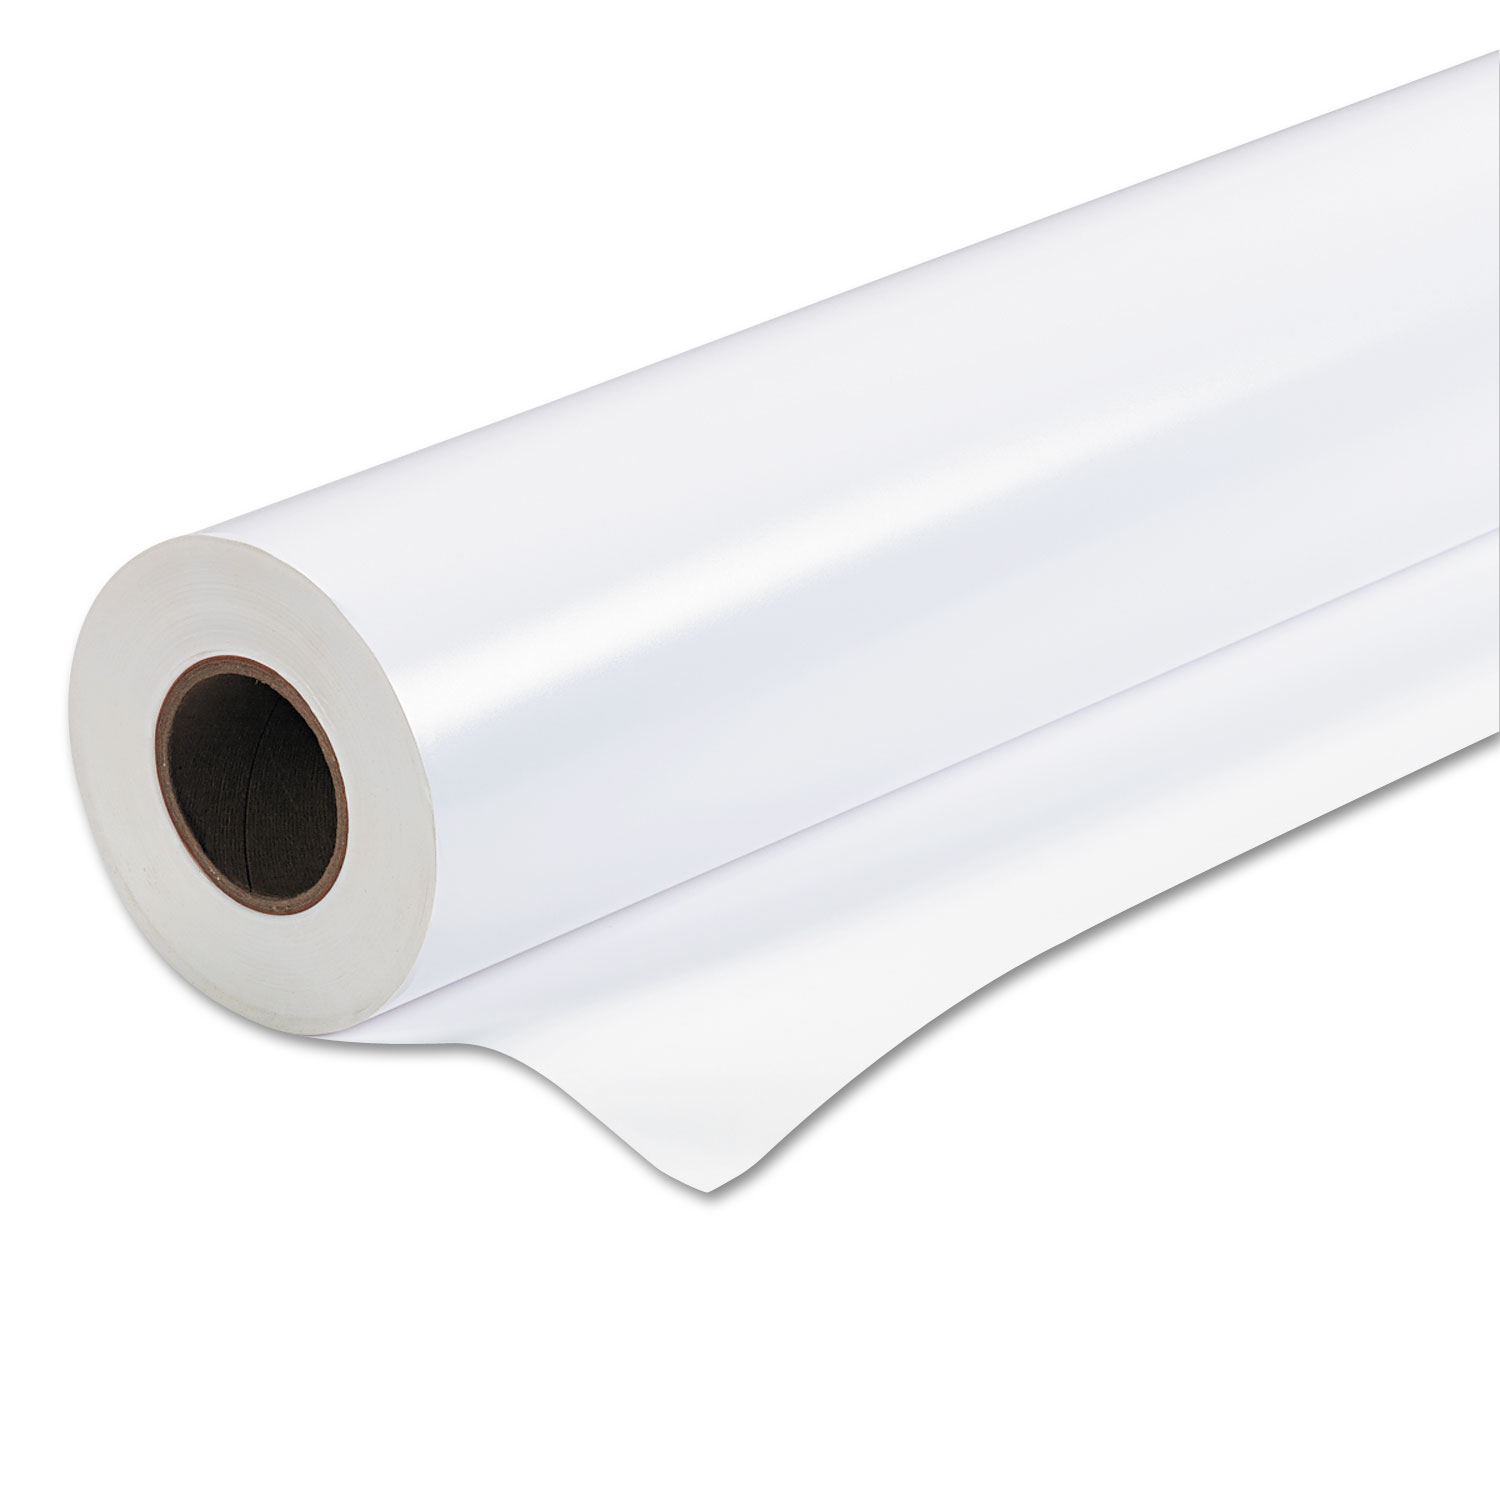 Premium Semi-Gloss Photo Paper, 170 g, 36 x 100 ft, White